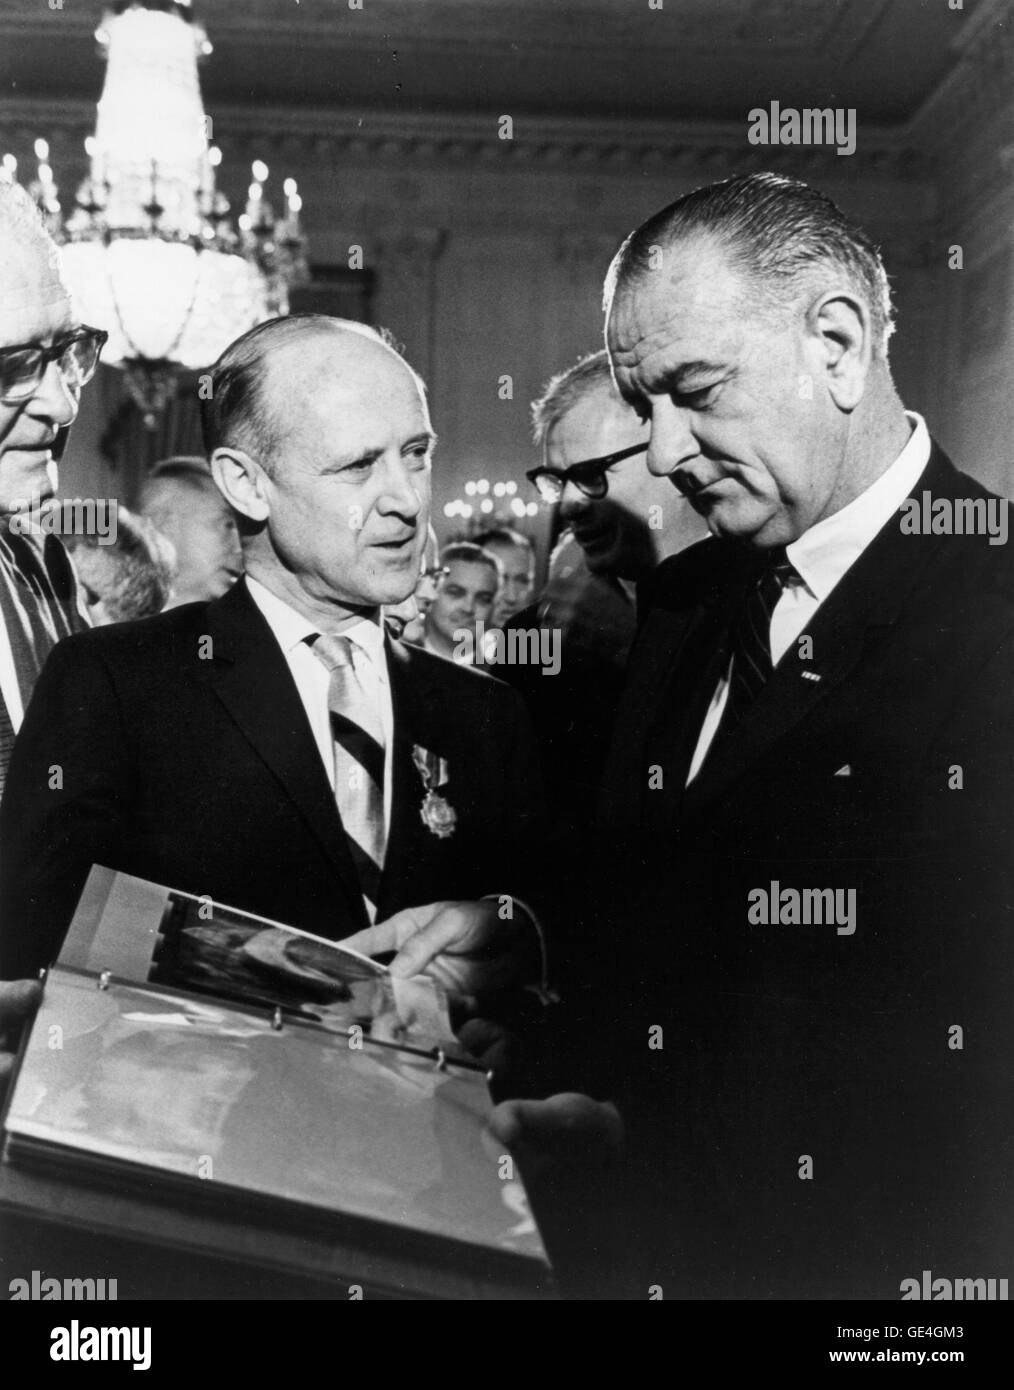 Beschreibung: (29. Juli 1965) Dr. William H. Pickering, (links) Direktor des Jet Propulsion Laboratory präsentiert Mariner Raumfahrzeuge Fotos Präsident Lyndon Baines Johnson.  Bezeichner GPN-2000-000480 Stockfoto